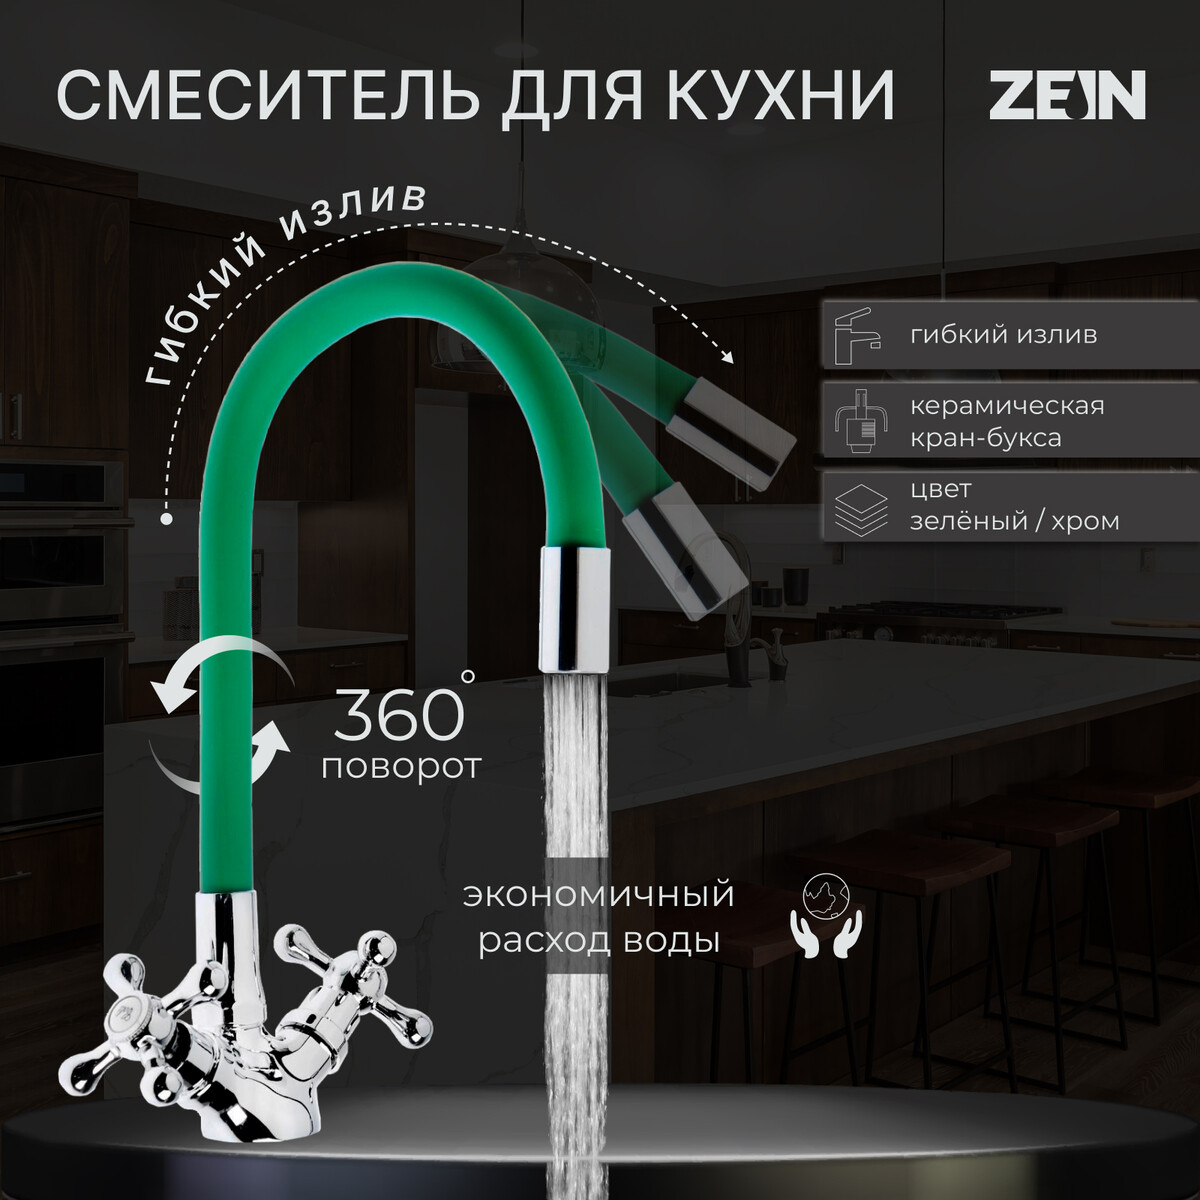 Смеситель для кухни zein z2102, двухвентильный, силиконовый излив, зеленый/хром смеситель для кухни am pm like f8007122